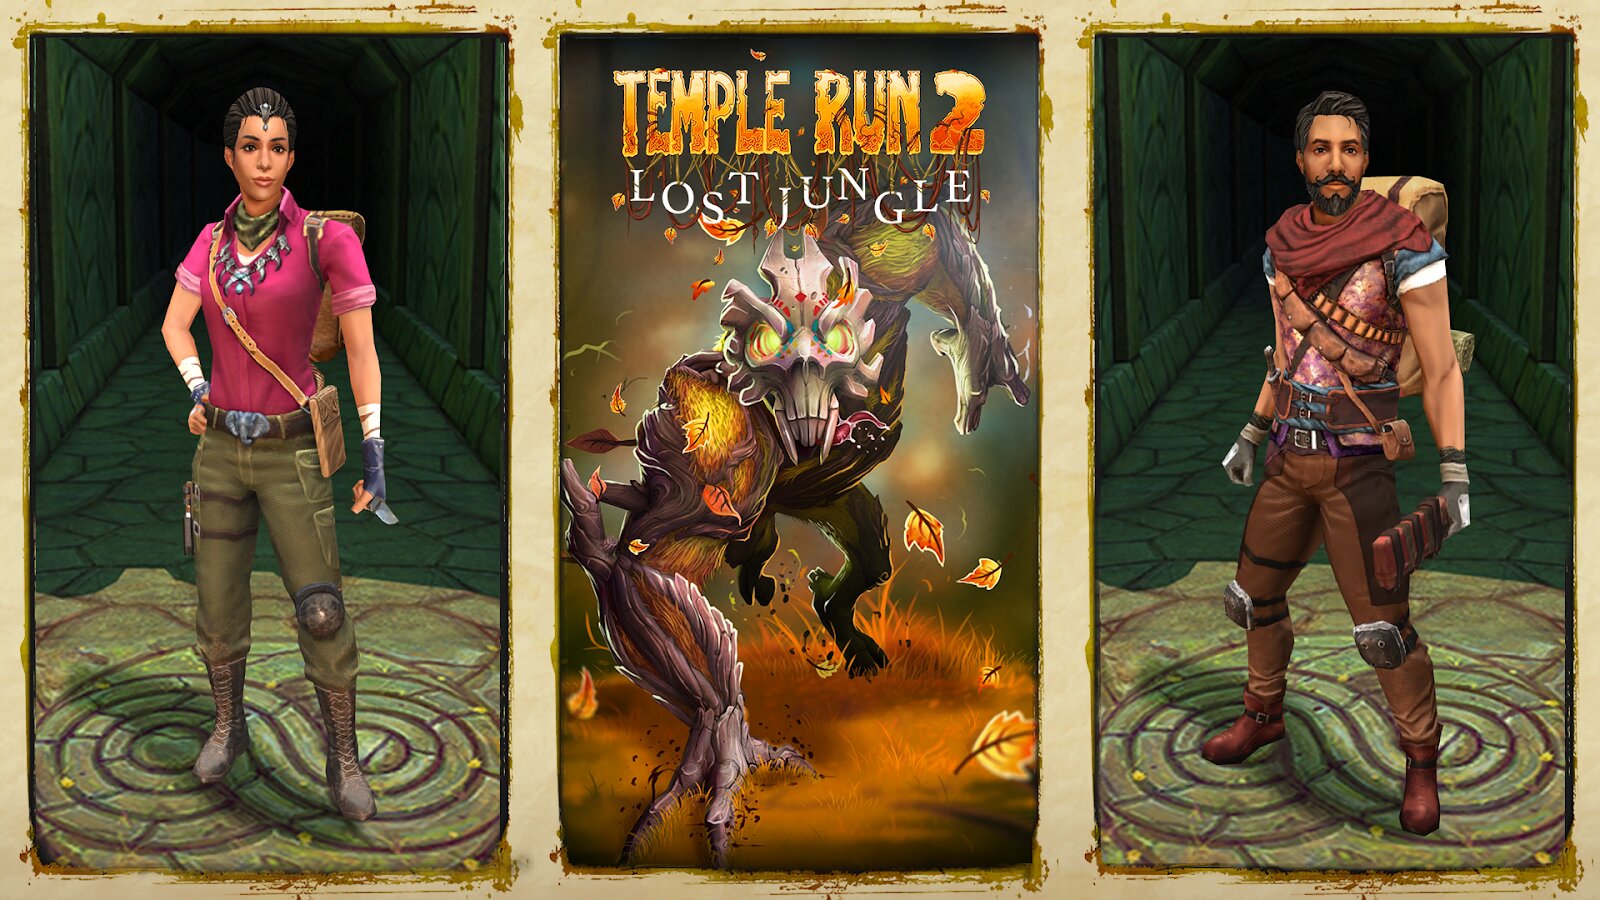 Temple run 2 lost jungle｜TikTok Search